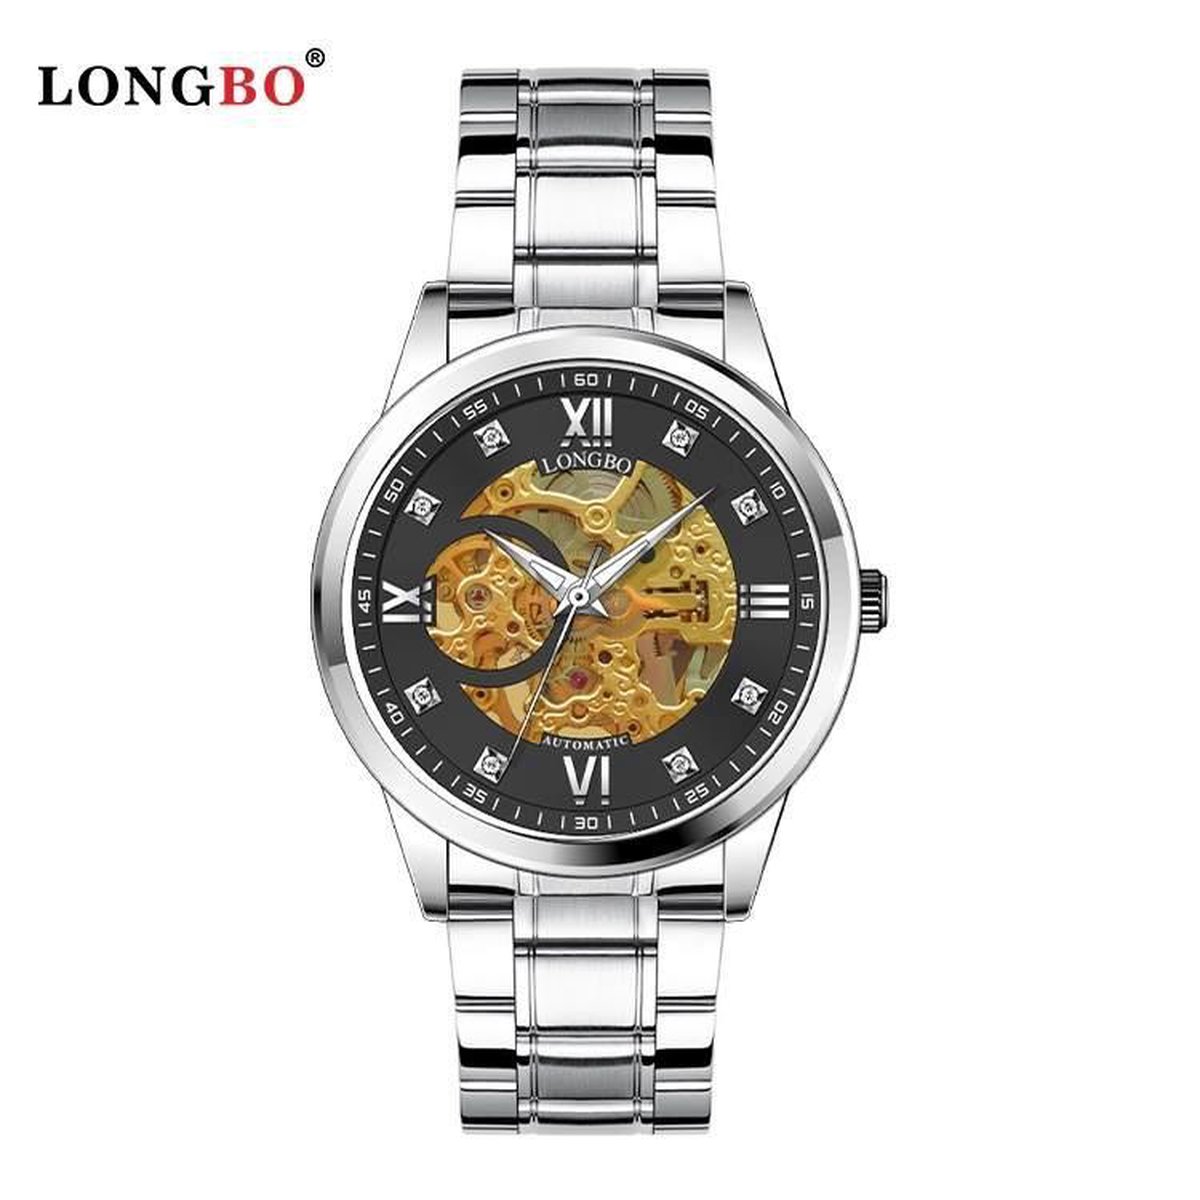 Longbo - Unisex Horloge - Skeleton - Zilveren Stalen Band - Zilver-Zwart-Goud - 40mm - Automatic